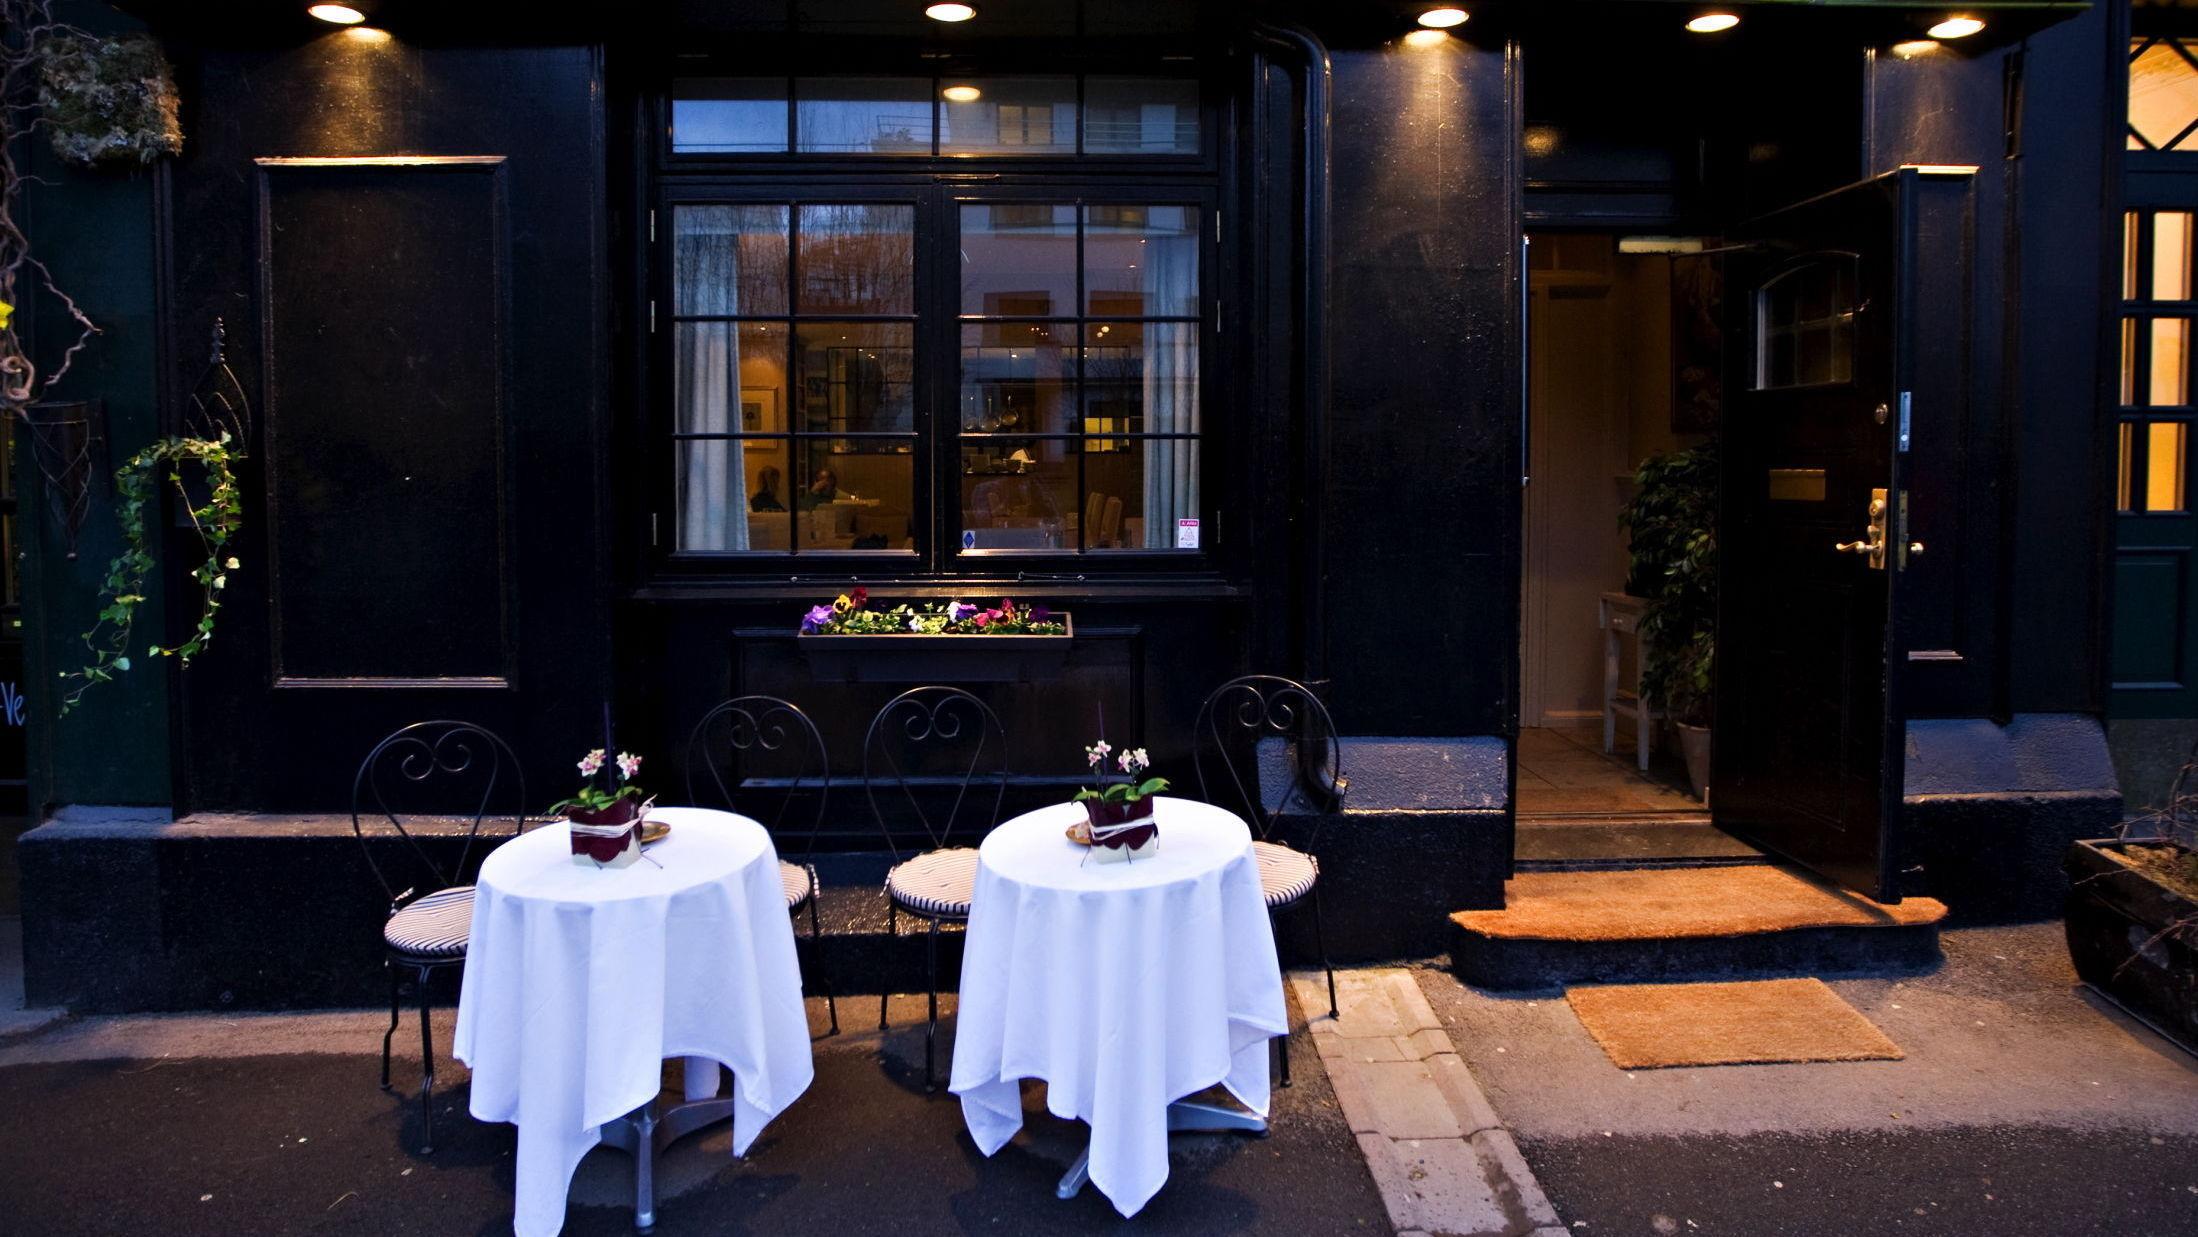 ROMANTISK?: Små runde bord, duker, levende lys. Hva ser du etter når du skal velge en romantisk restaurant? Foto:Eivind Griffith Brænde/VG